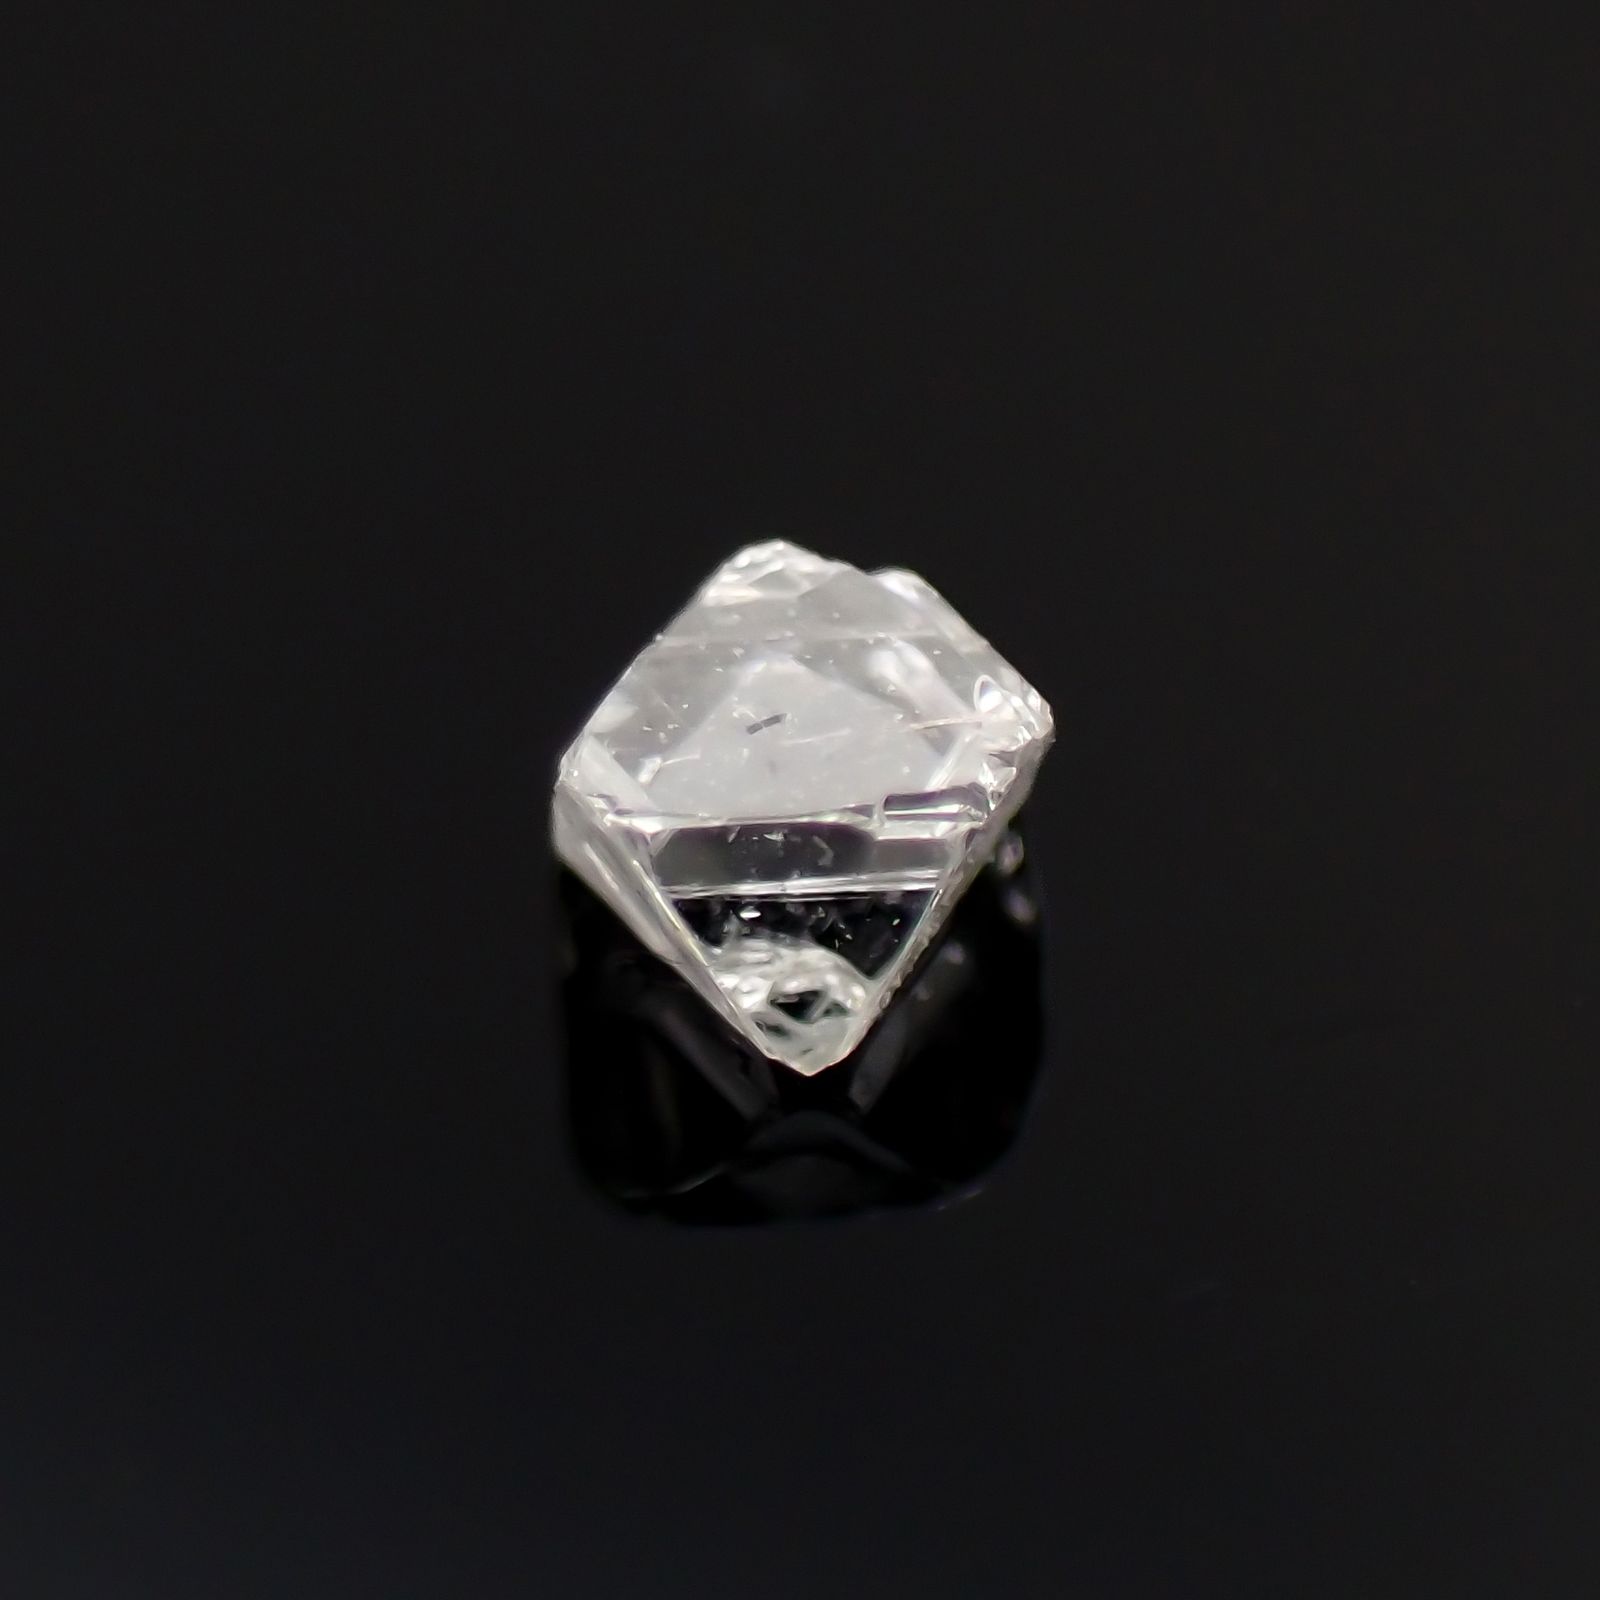 ソーヤブルダイヤモンド 原石（トライゴンあり/Trigon） 0.068ct2.4x2.2mm前後